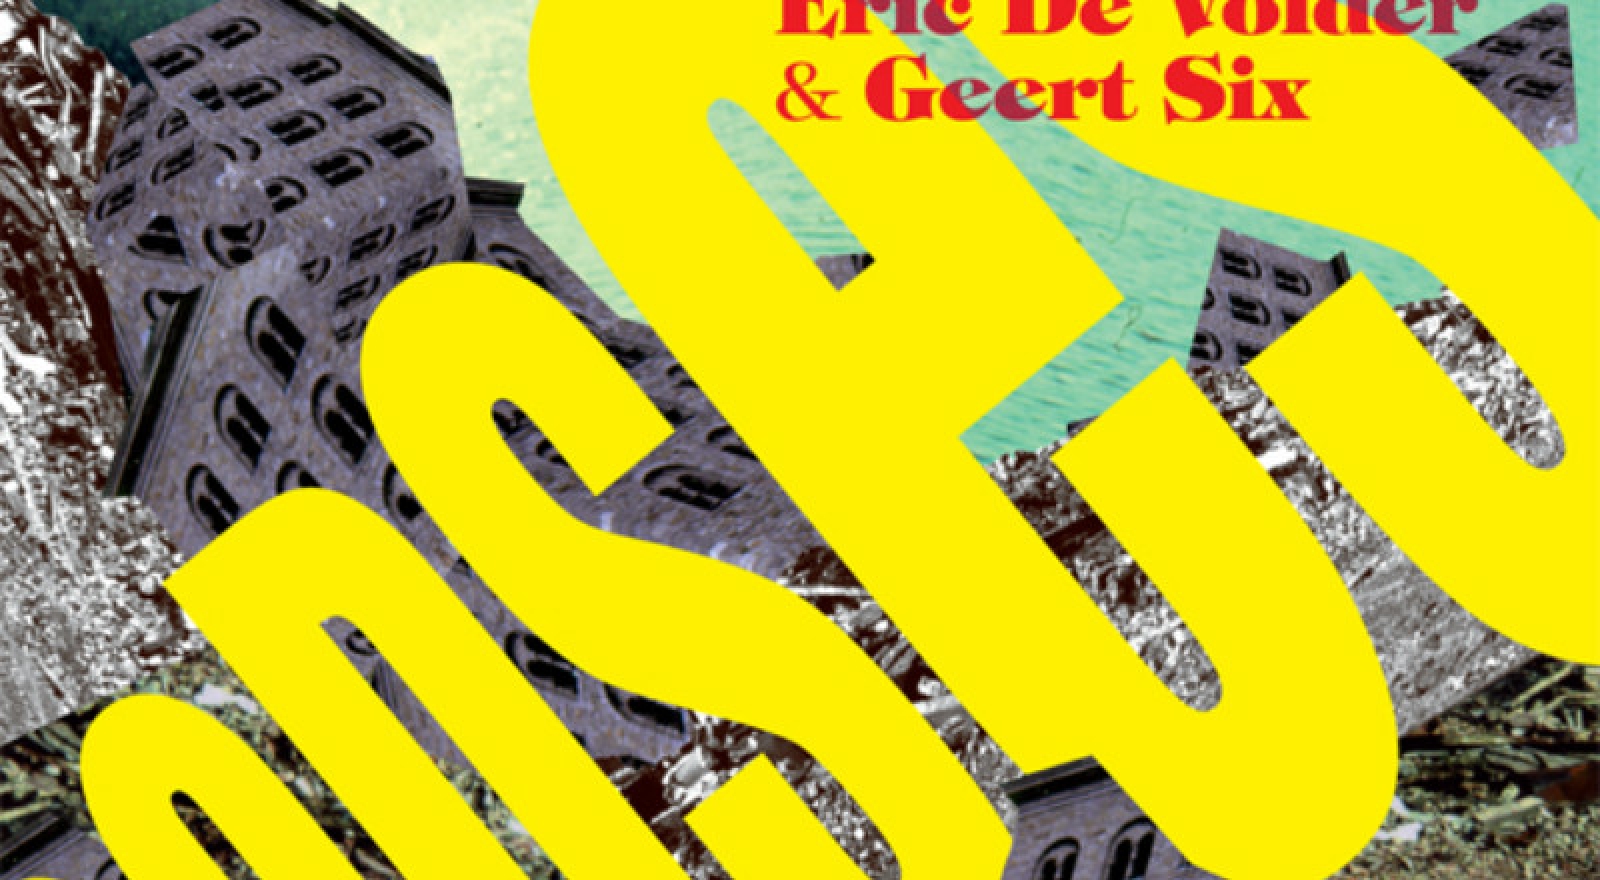 Godses - Eric De Volder & Geert Six - CAMPO, Toneelgroep Ceremonia & Unie der Zorgelozen